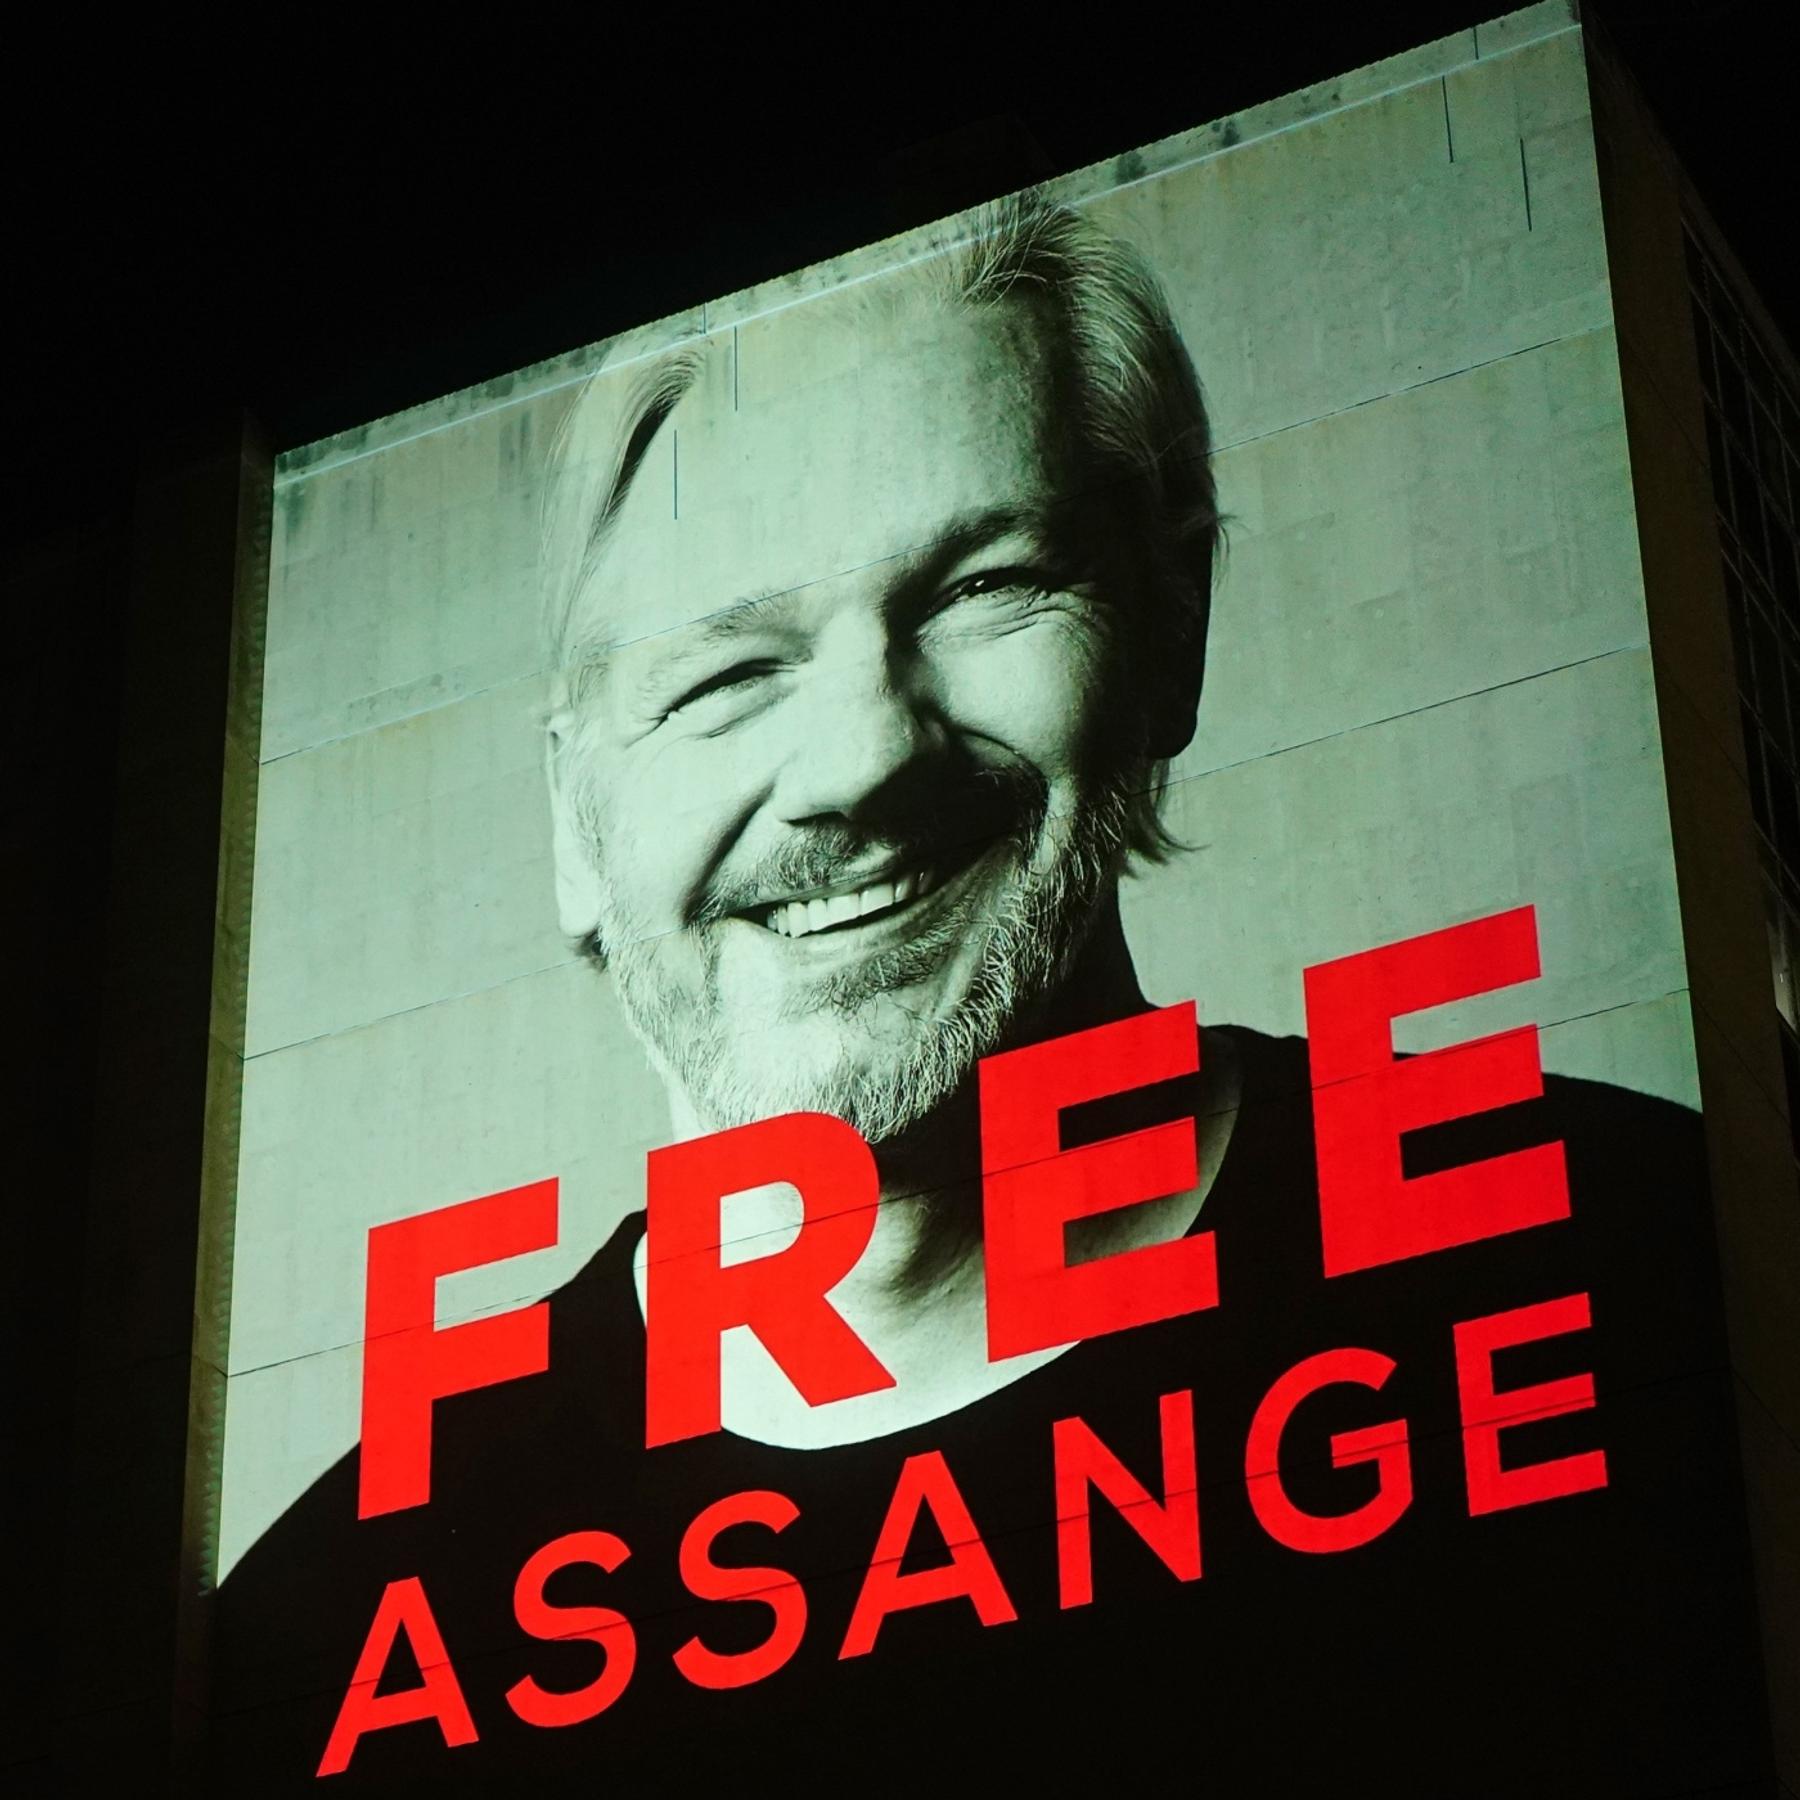 Der Fall Assange – eine “Schande für westliche Demokratien”?